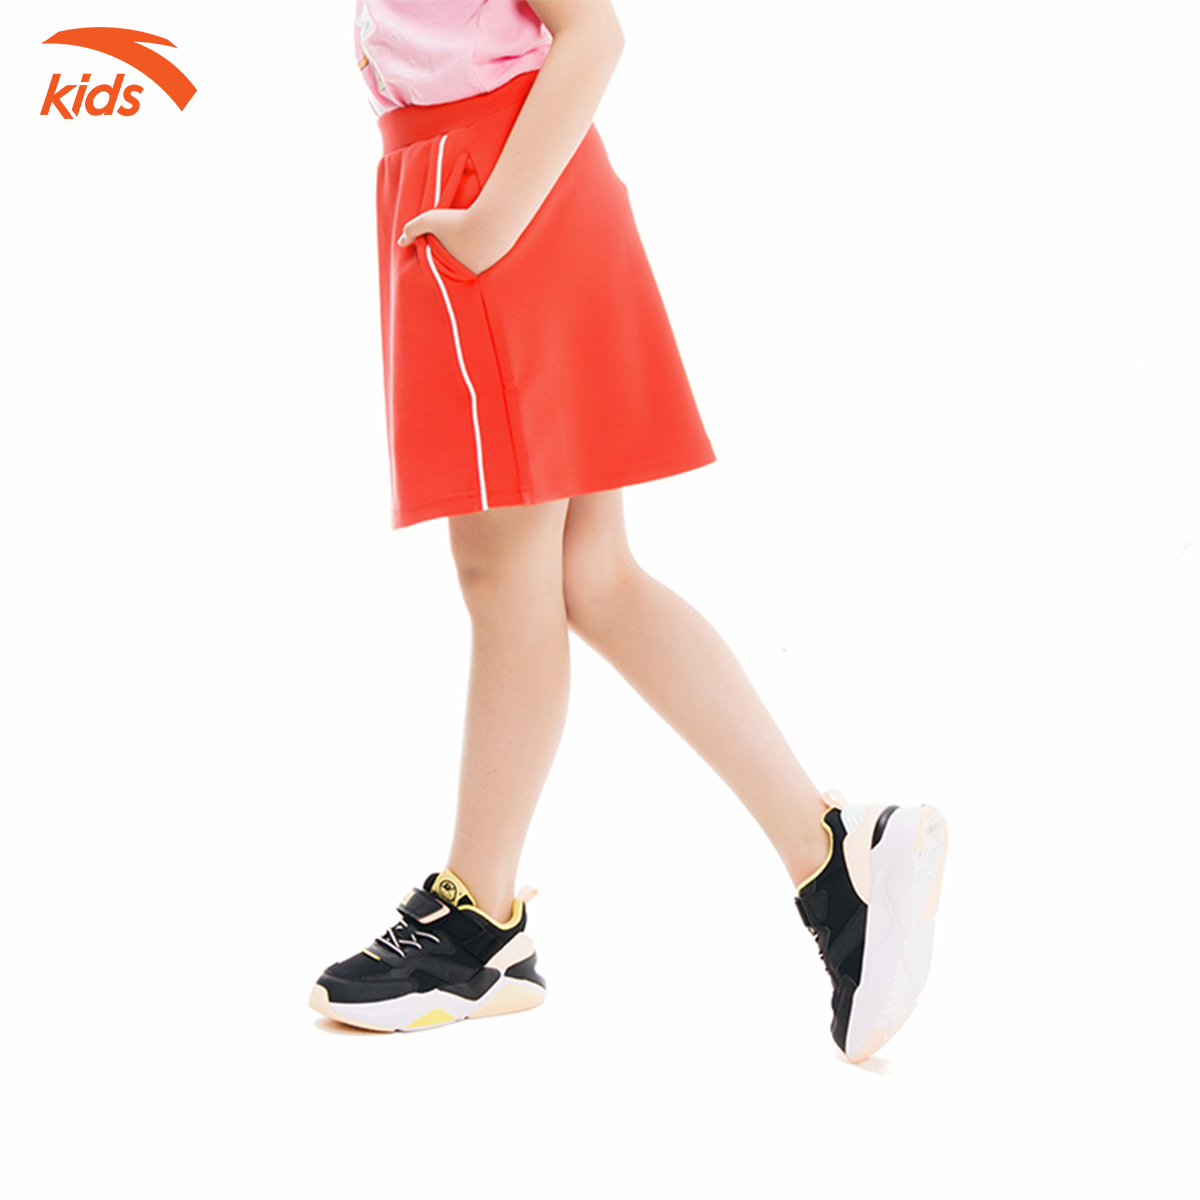 Chân váy ngắn bé gái Anta Kids 362017394-1, kiểu dáng thể thao, chất liệu mềm mịn